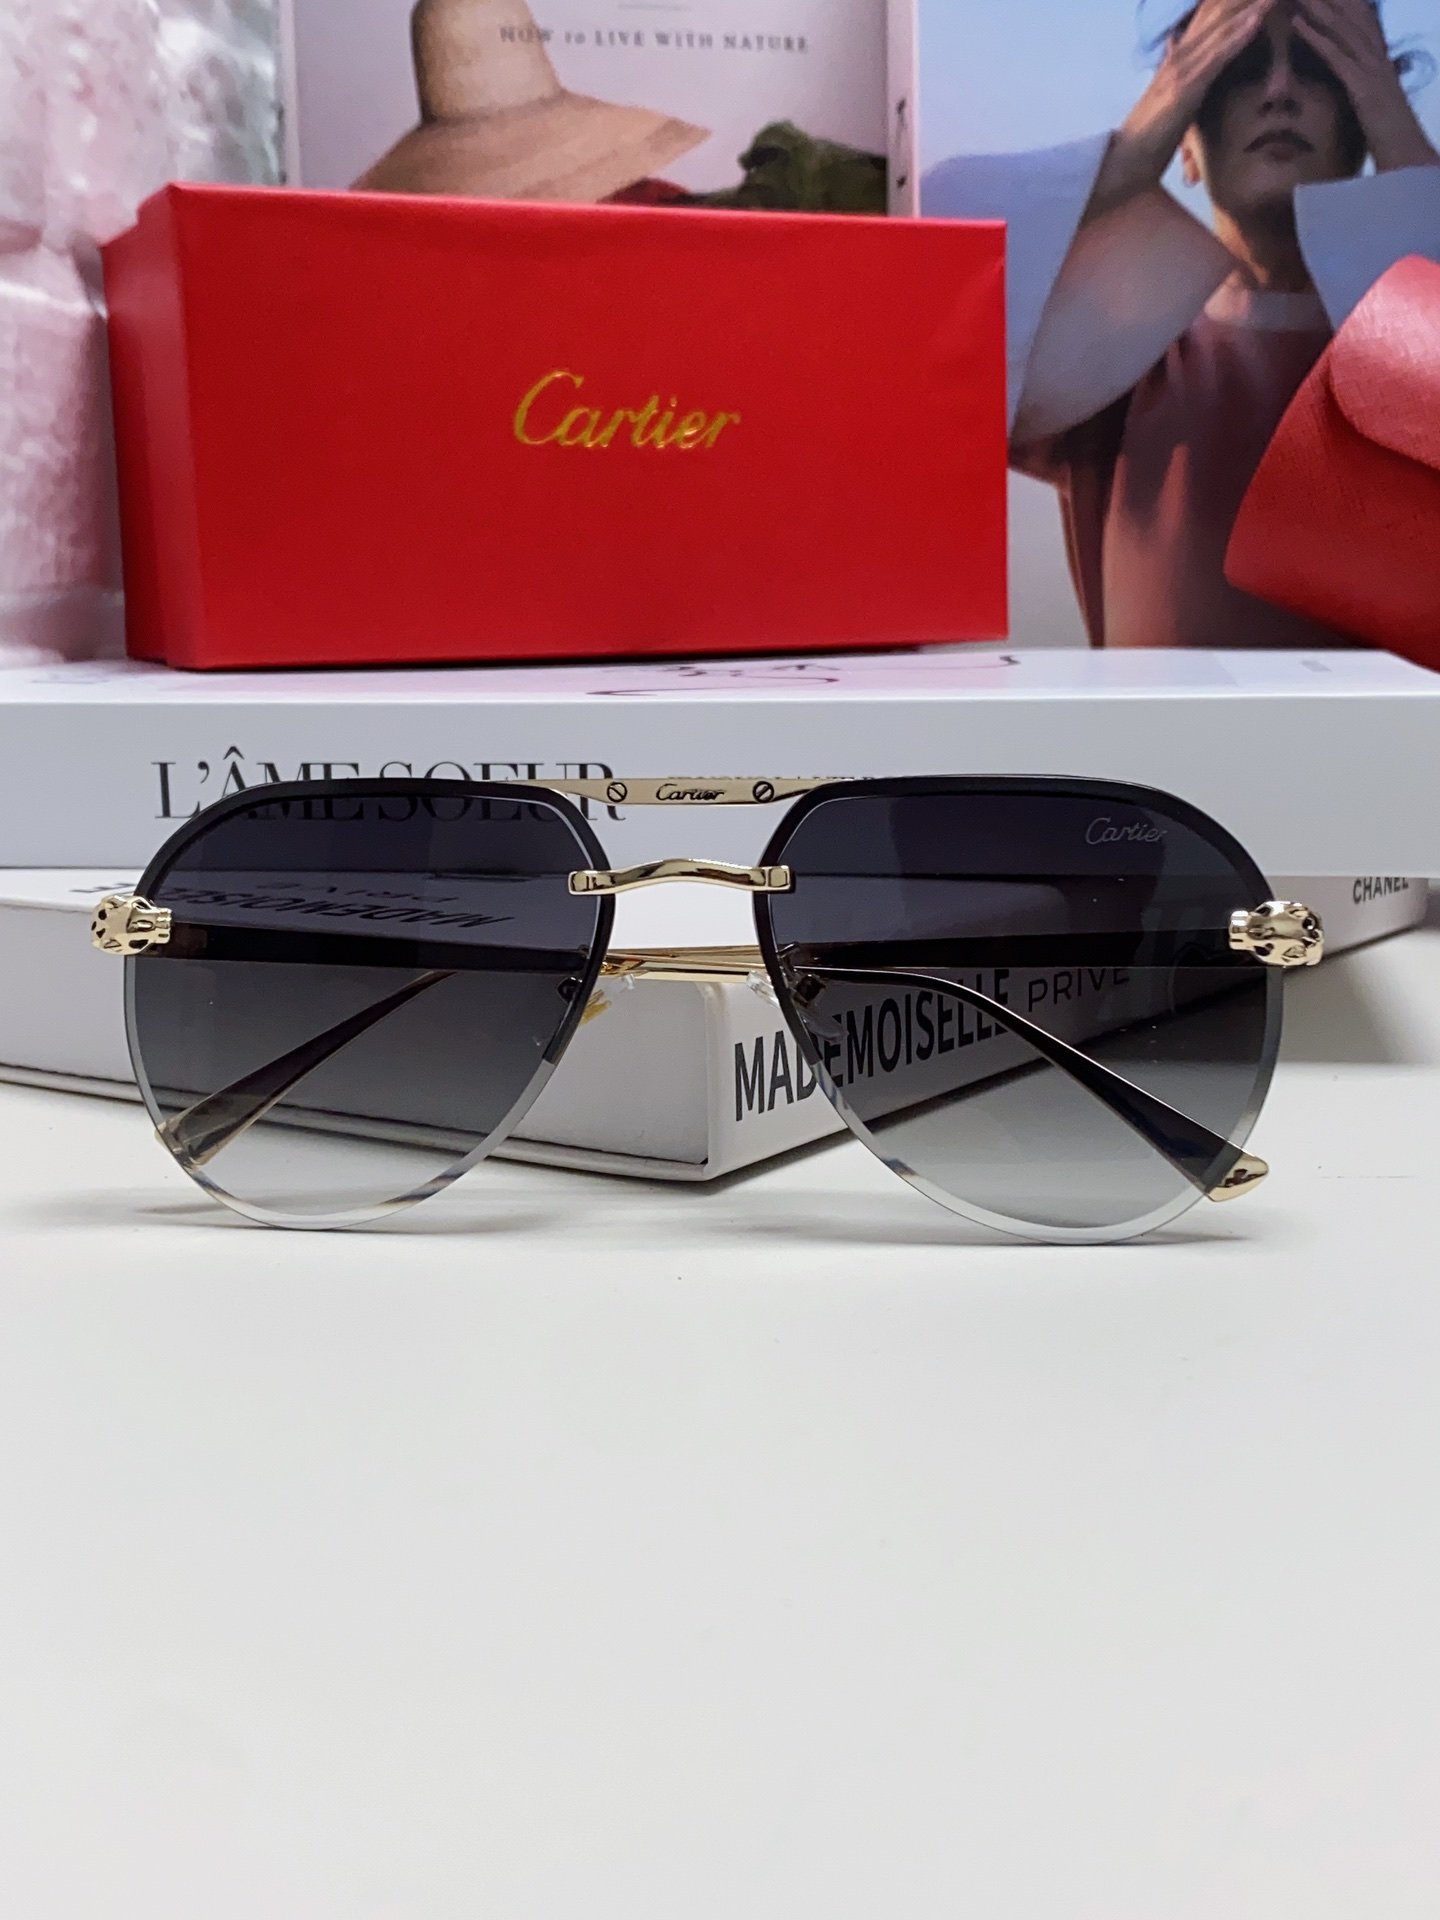 Cartier卡地亚墨镜男女士圆框太阳眼镜开车墨镜新款金属太阳镜时尚大方舒适轻盈精致奢华超轻